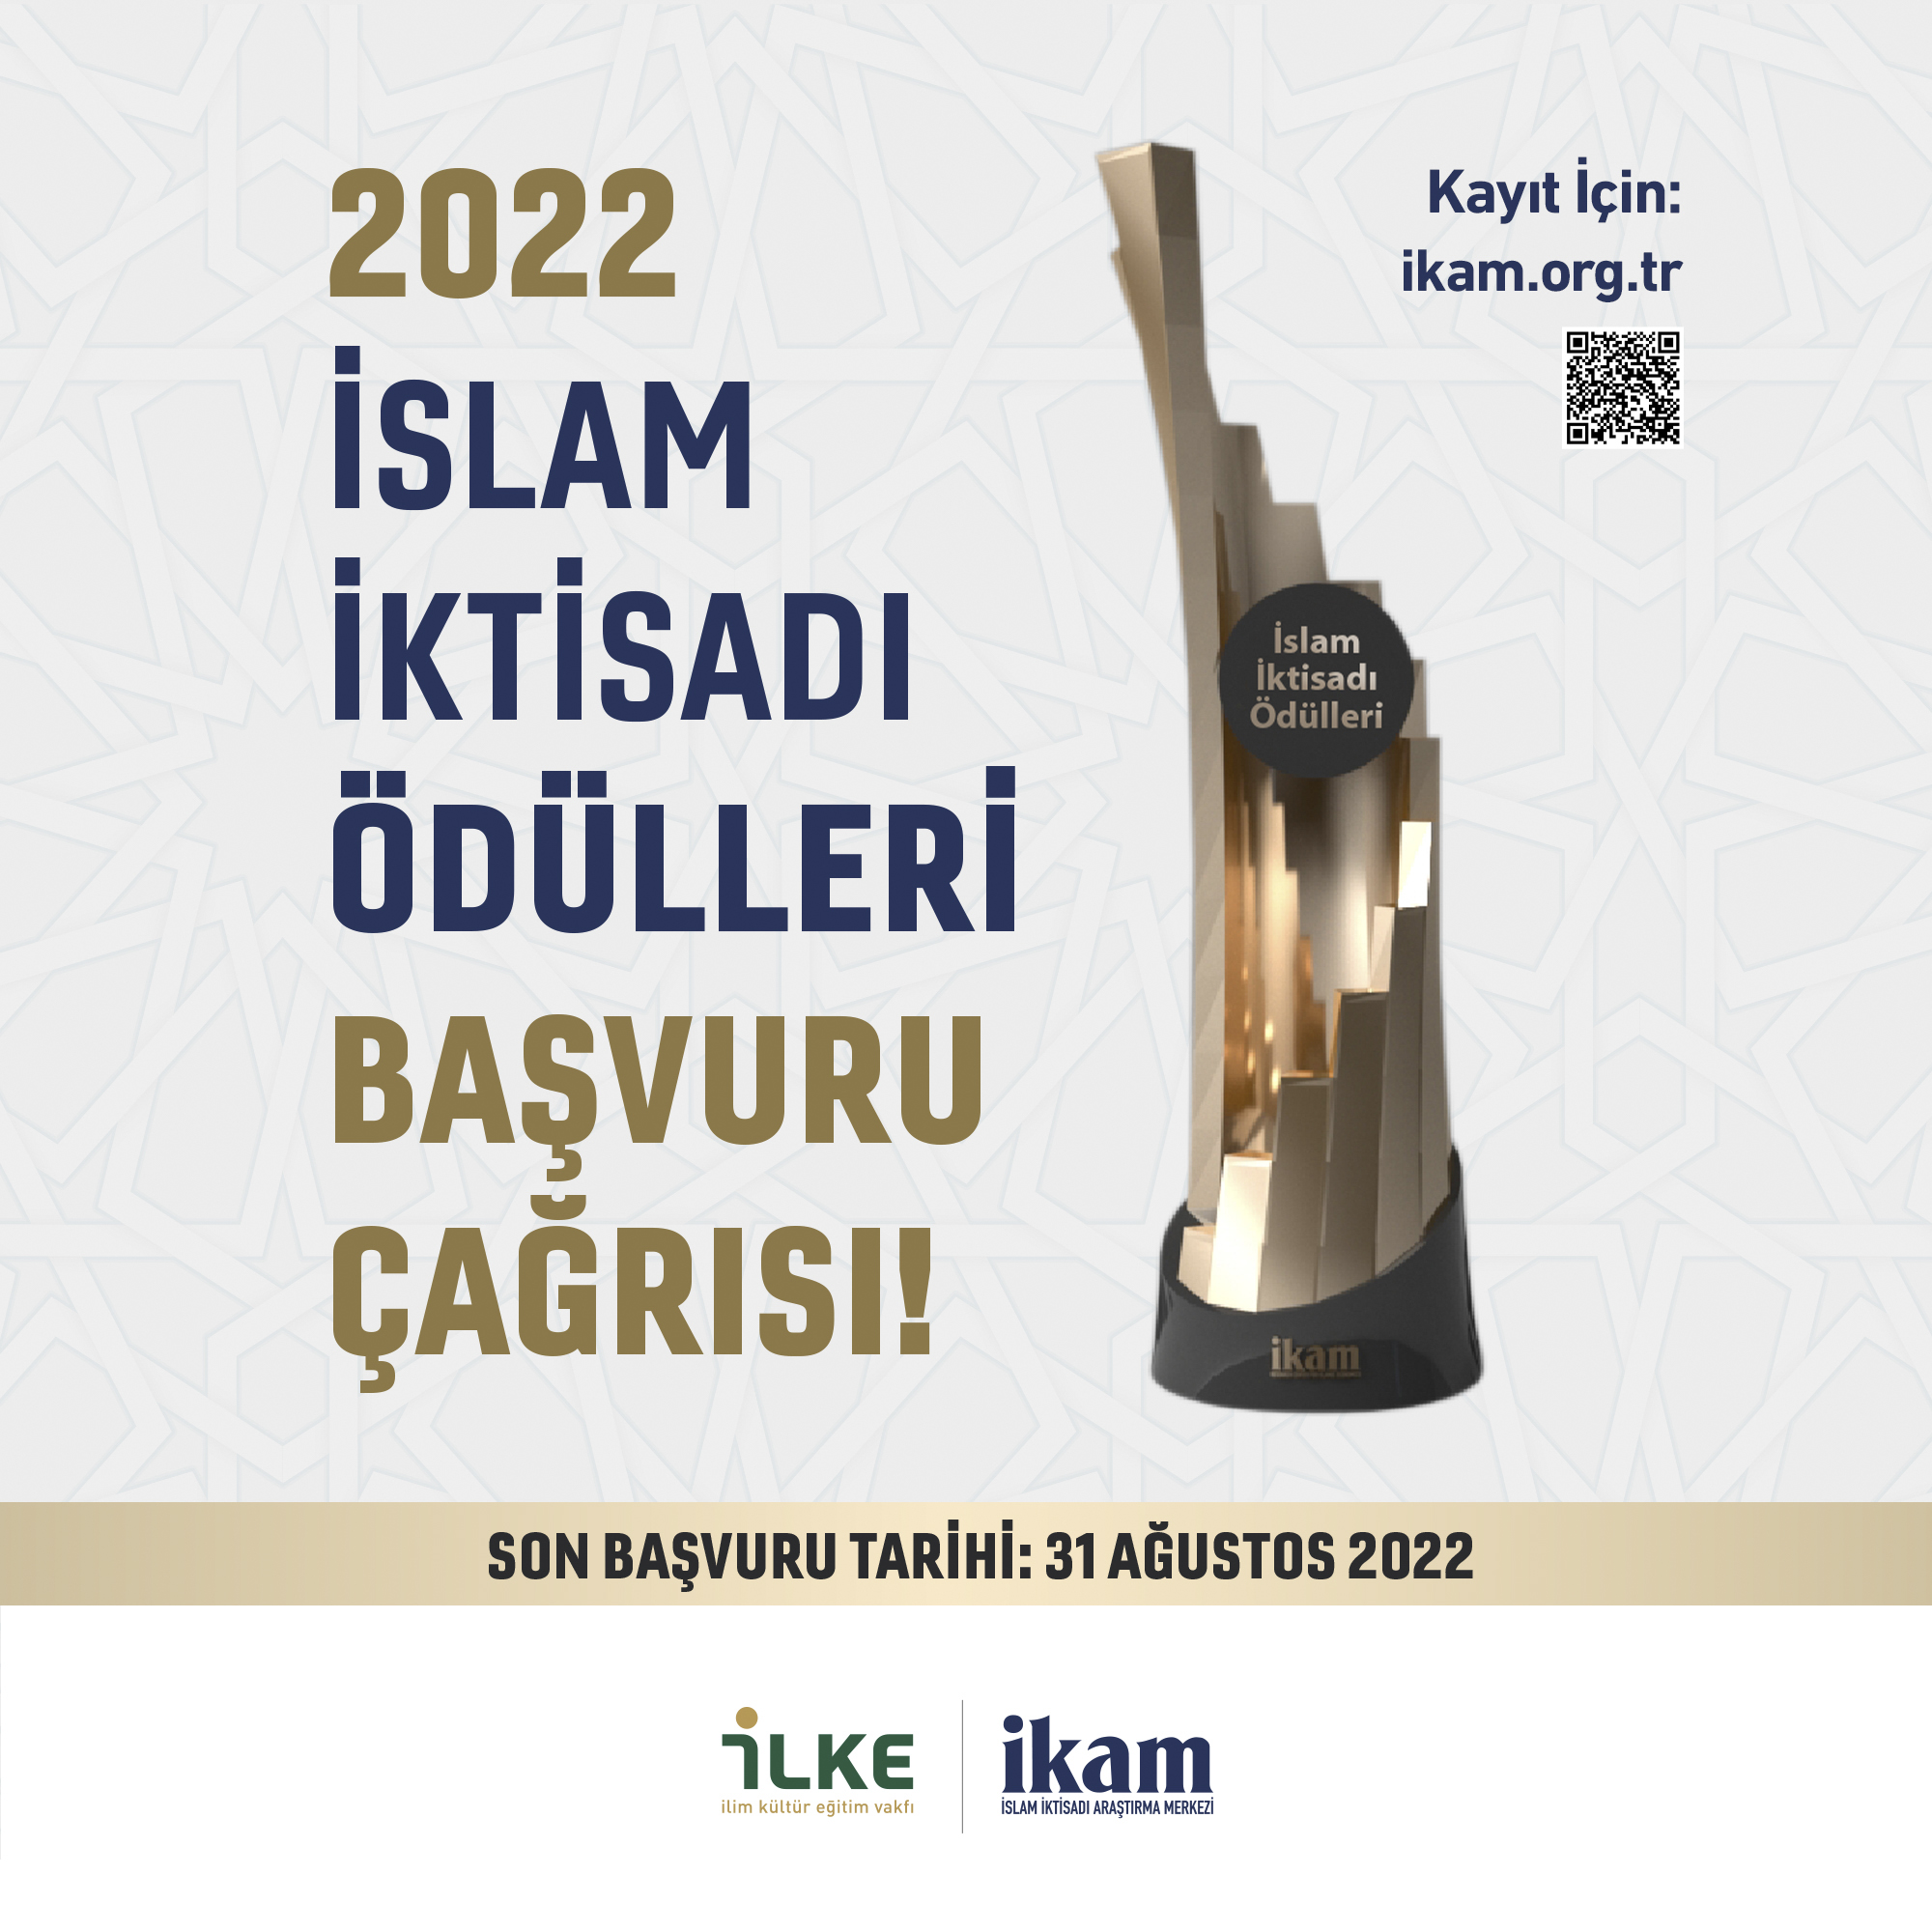 İslam İktisadı Ödülleri 2022 Başvuru Çağrısı